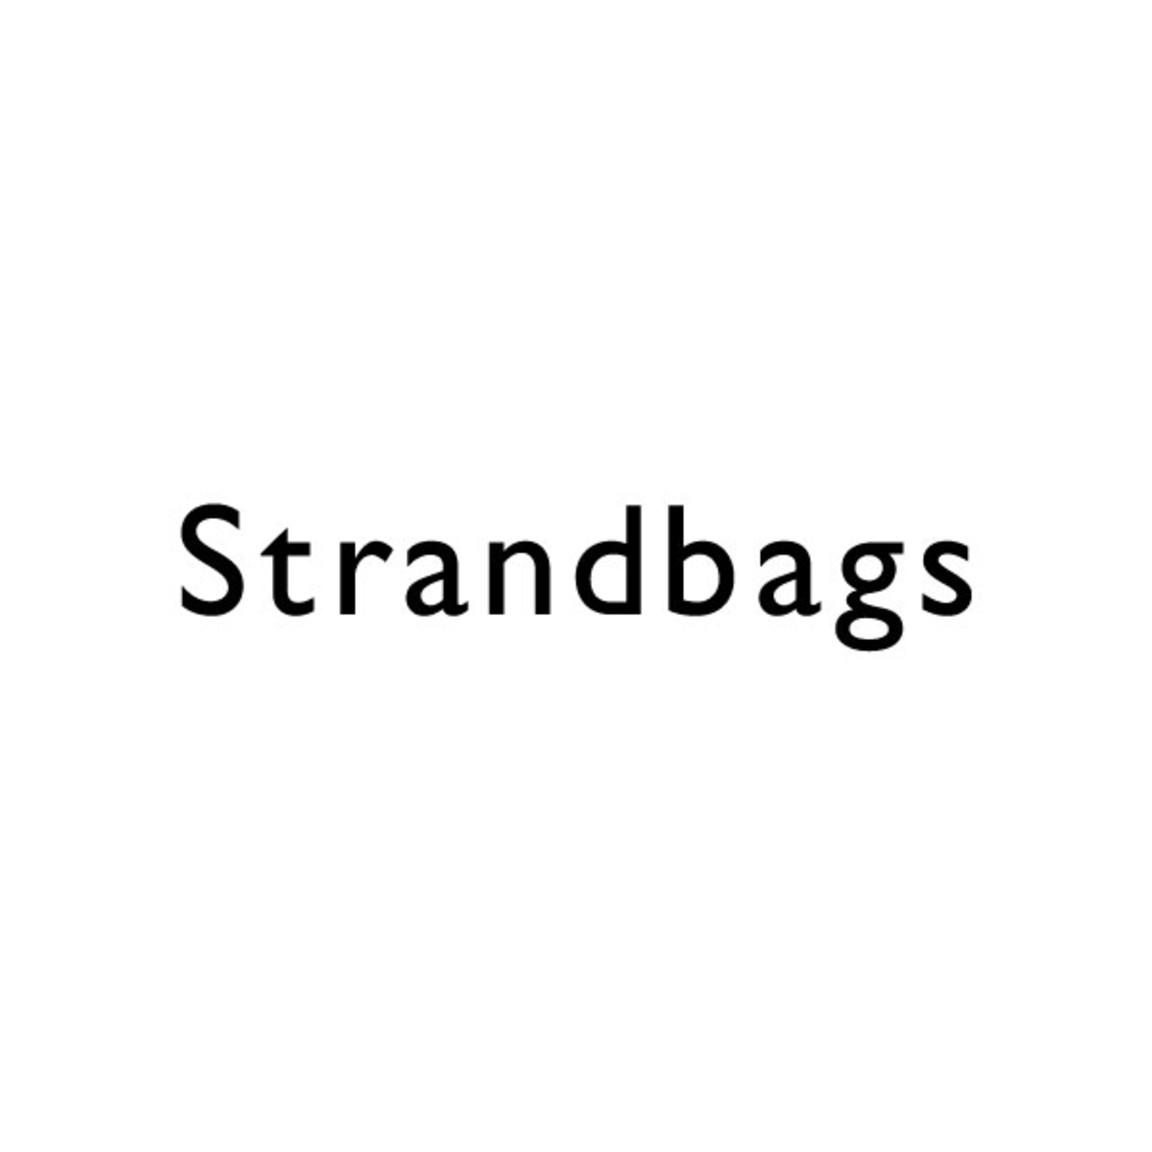 Strandbags at Westfield Riccarton